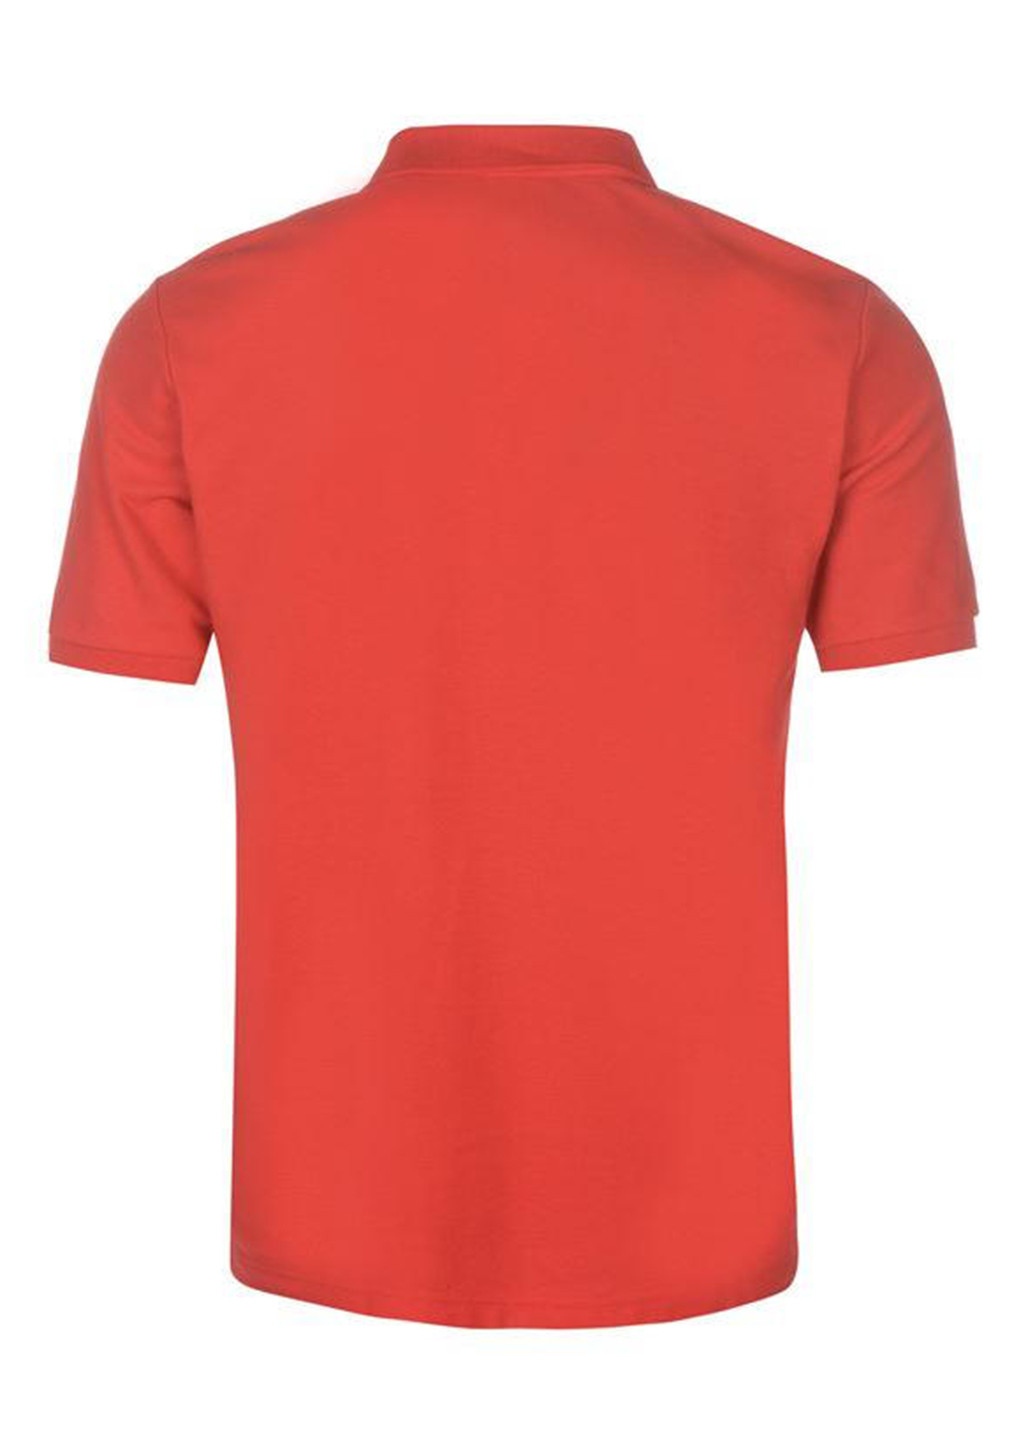 Красная футболка-поло для мужчин Slazenger с рисунком